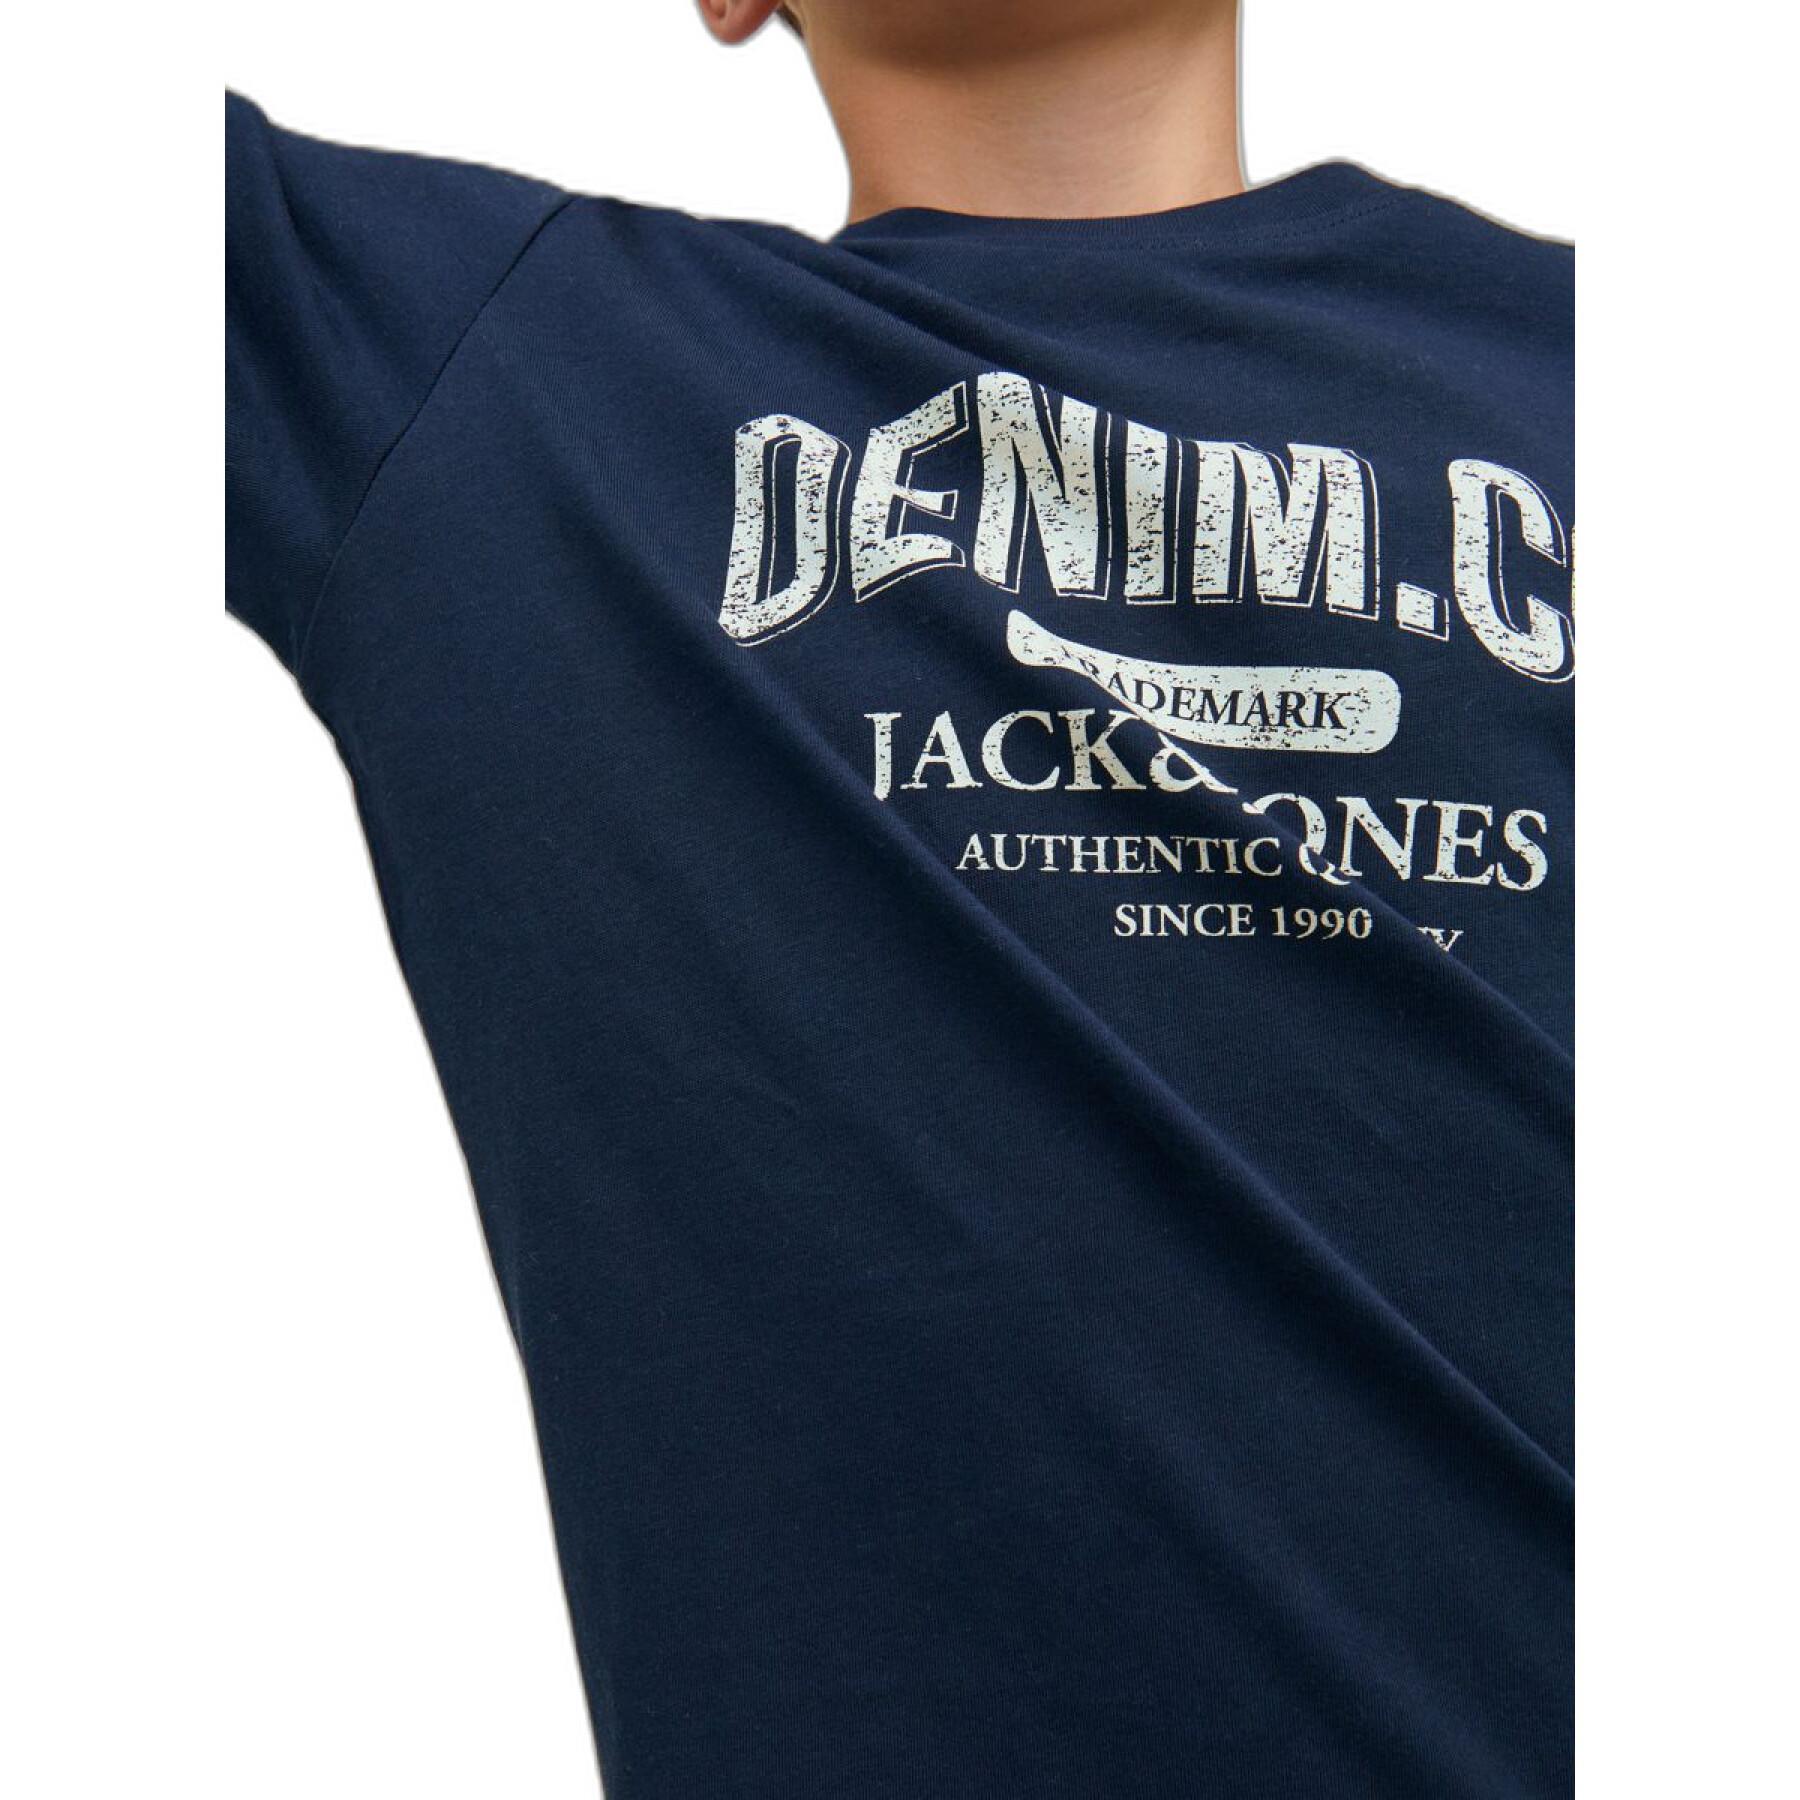 Long-sleeved t-shirt for children Jack & Jones Jeans